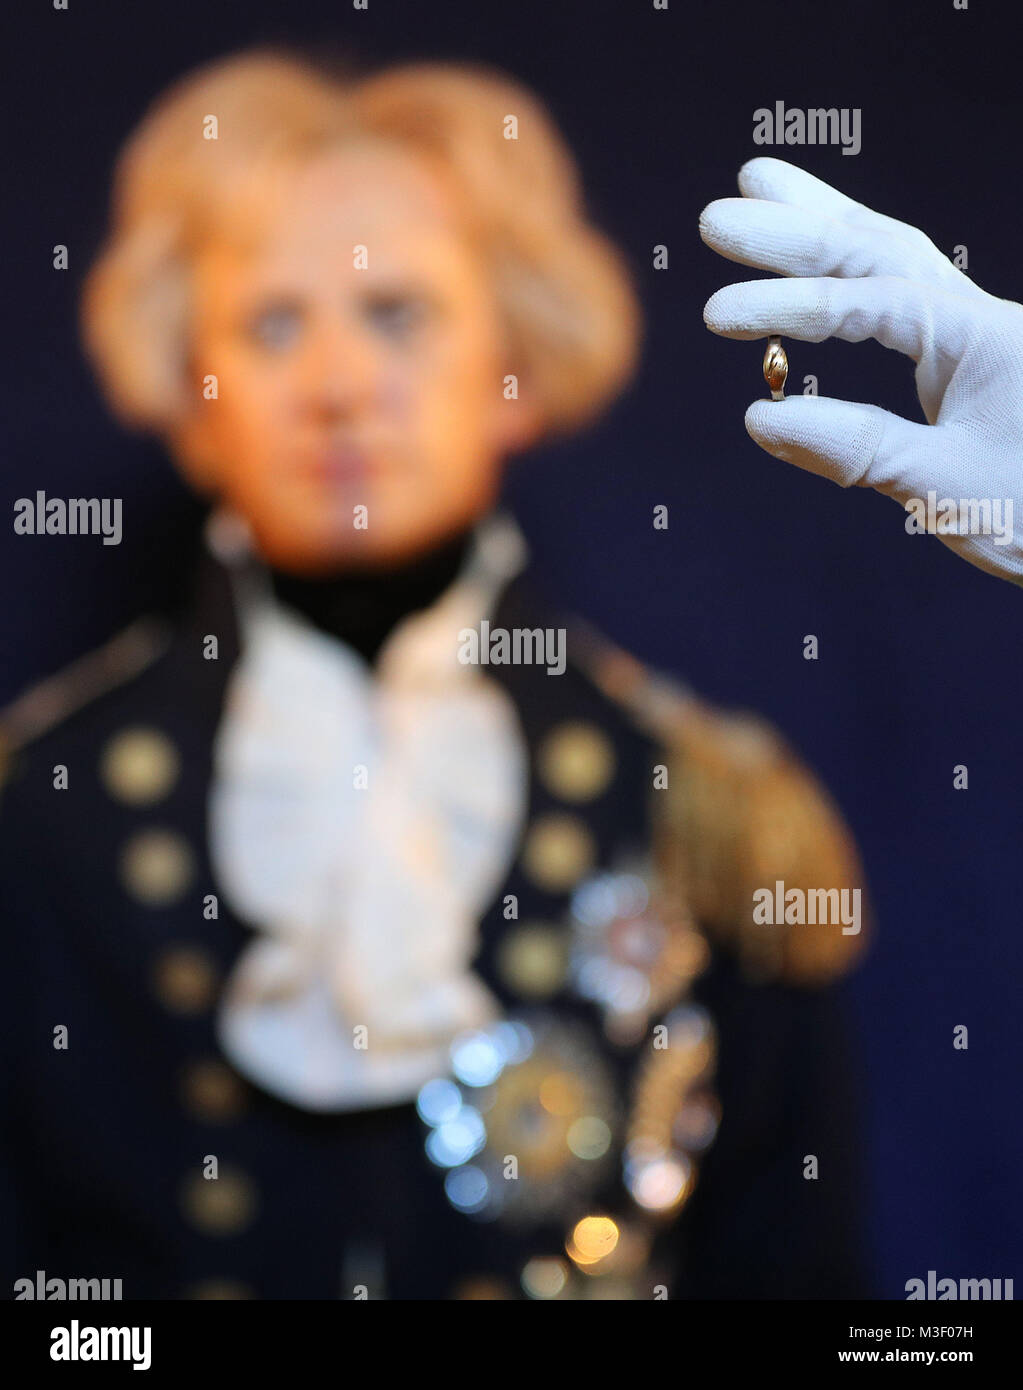 Ein Mitarbeiter von Portsmouth Historic Dockyard hält eine Verlobung ring Vice Admiral Lord Nelson, um seine geliebte Emma Hamilton am Vorabend seiner Abreise für die Schlacht von Trafalgar, in der er gestorben ist, die auf die Anzeige auf dem nationalen Museum der Royal Navy in Portsmouth Historic Dockyard gehen für Valentinstag gab. Stockfoto